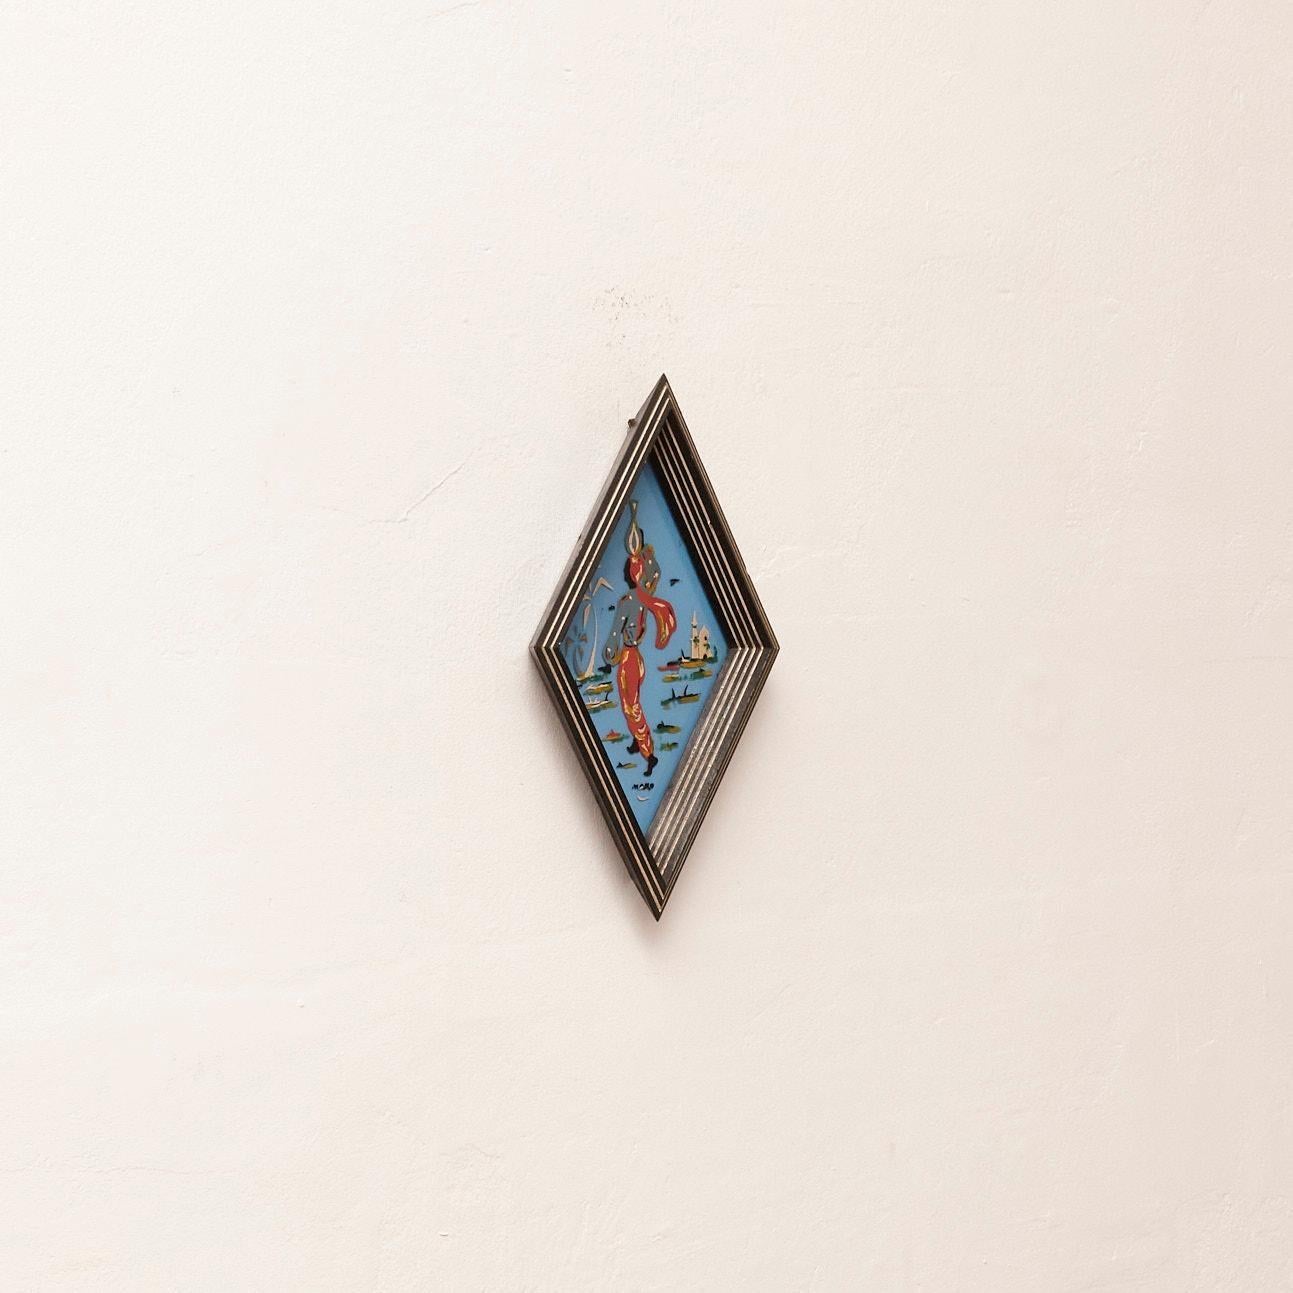 Gerahmtes blaues Glas, handbemalt, um 1950
Hergestellt in Frankreich, um 1950.

MATERIALIEN:
Holz, Glas.

Abmessungen: 
T 4 cm x B 23,2 cm x H 38 cm

Das Kunstwerk befindet sich in seinem ursprünglichen Zustand und weist geringe alters- und